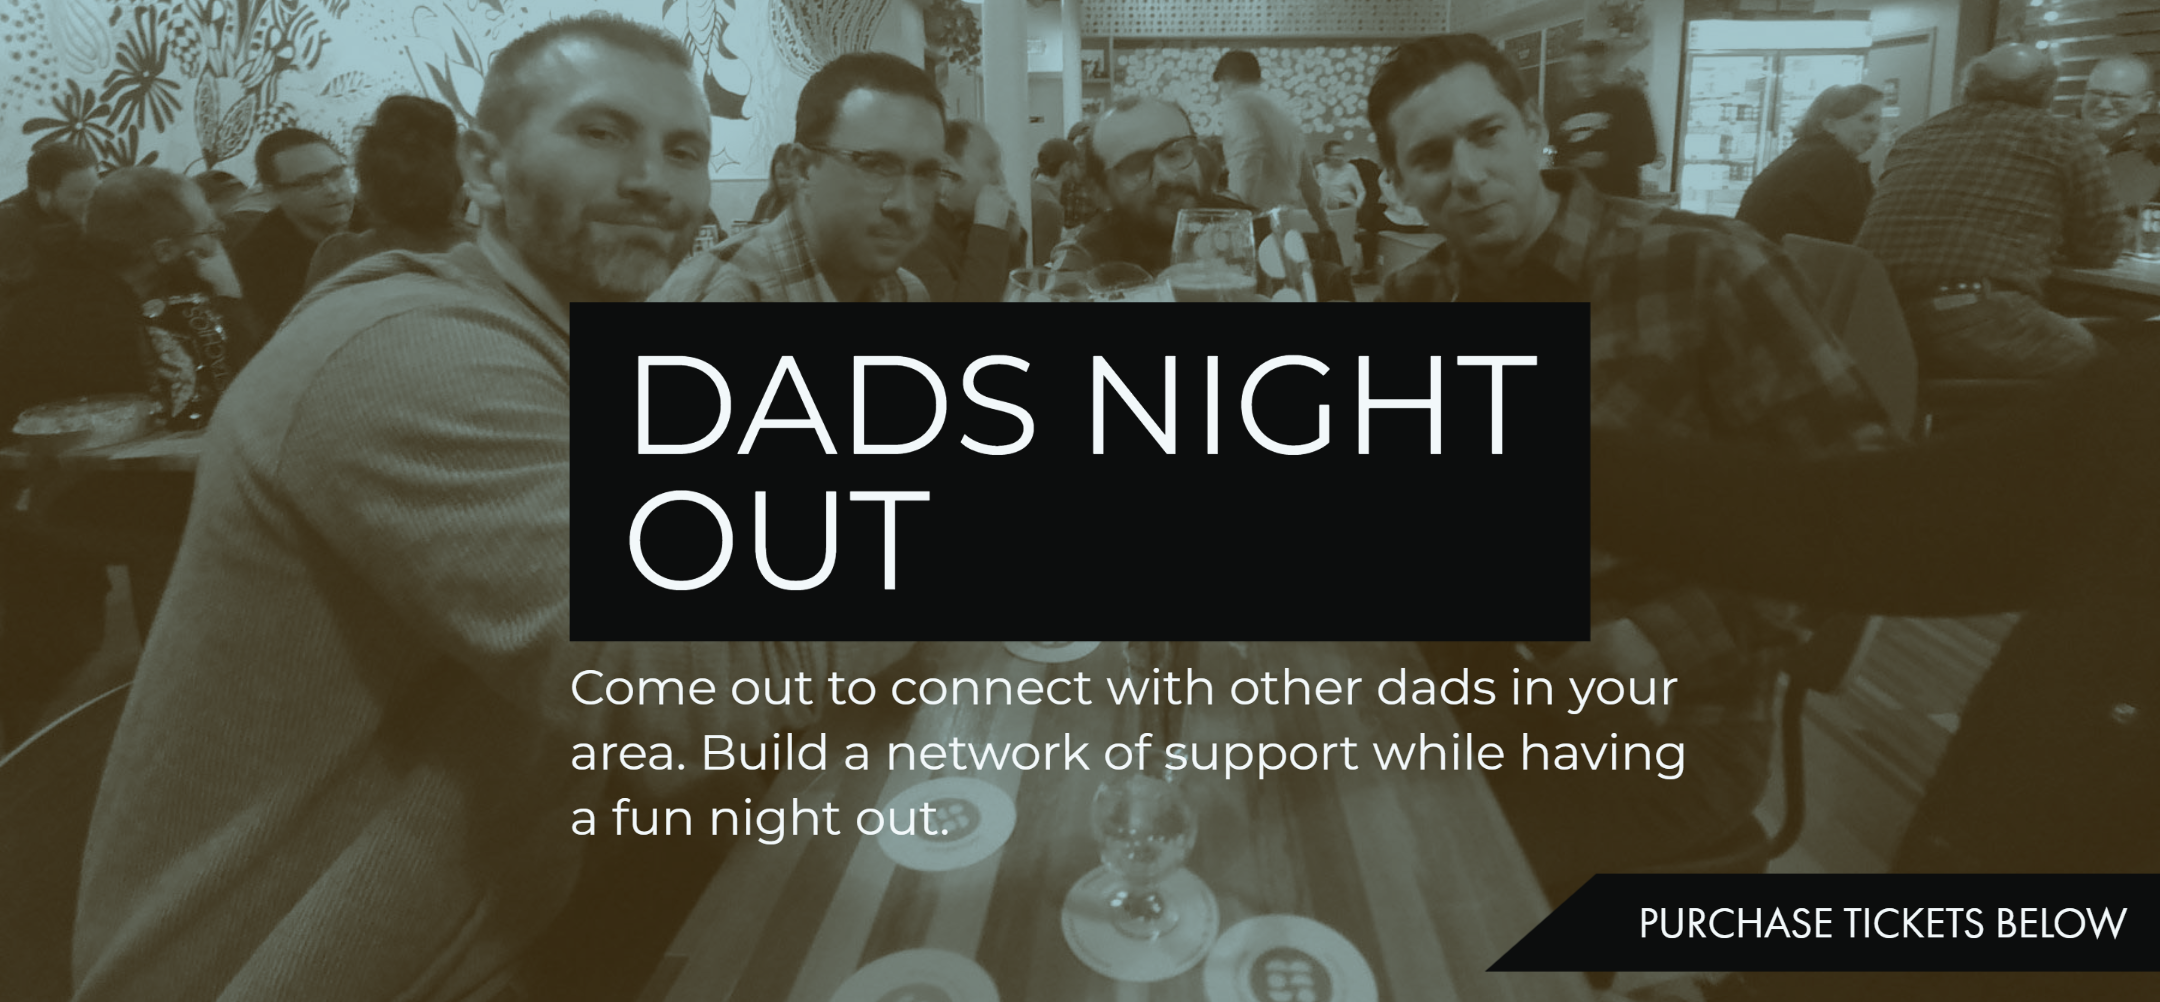 Dads Night Out - BW3 - Detroit, Michigan